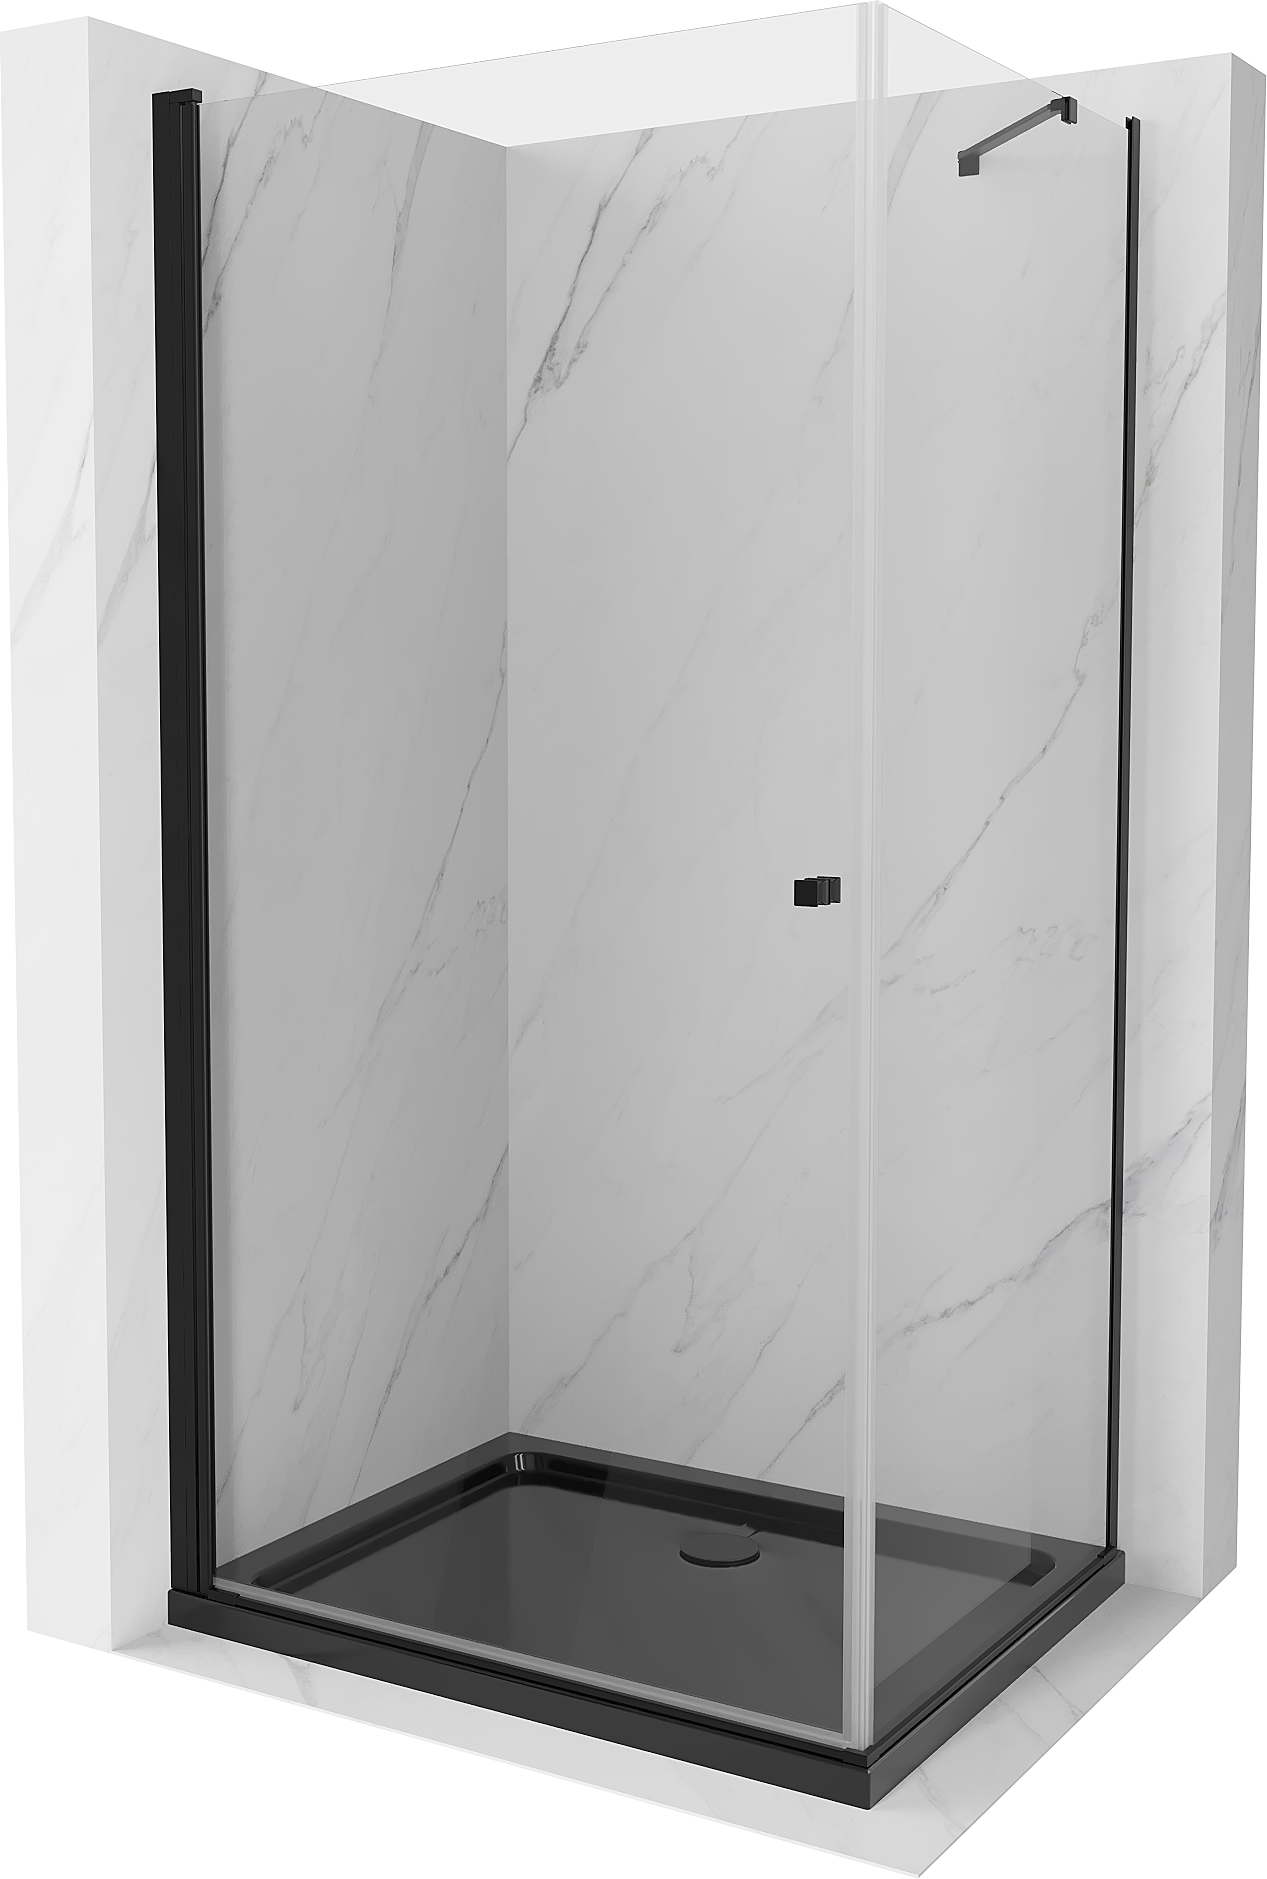 Mexen Pretoria kabina prysznicowa uchylna 80 x 100 cm, transparent, czarna + brodzik Flat, czarny - 852-080-100-70-00-4070B